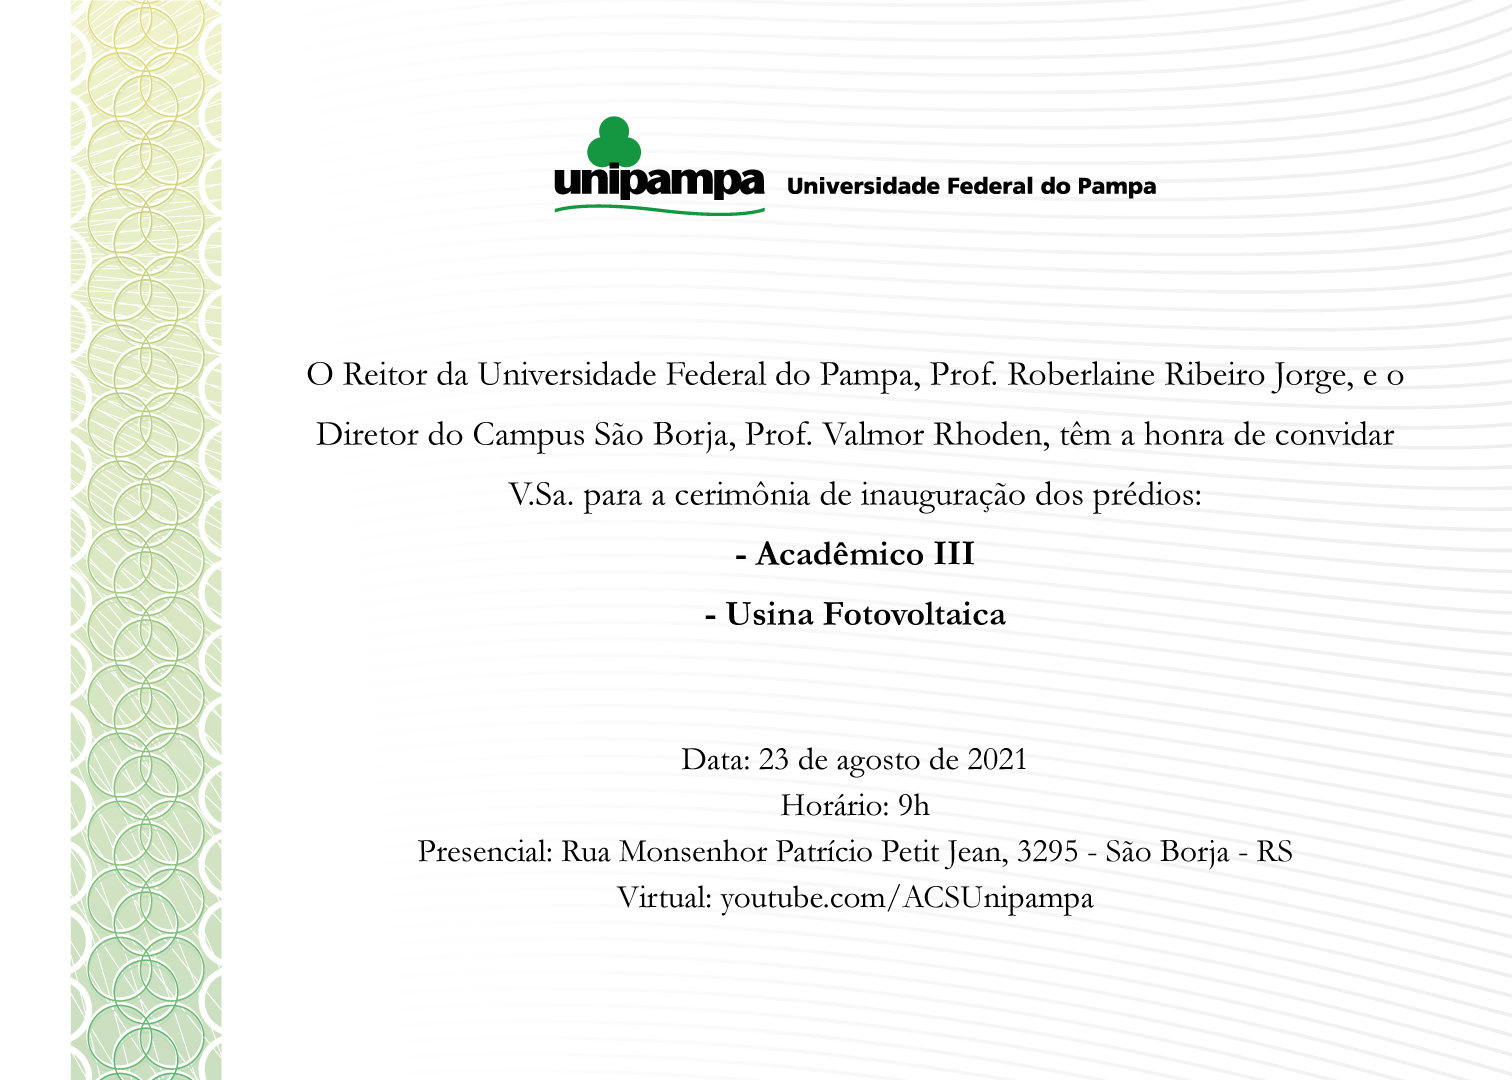 Convite para inauguração do Prédio Acadêmico III e da Usina Fotovoltaica do Campus São Borja - Divulgação